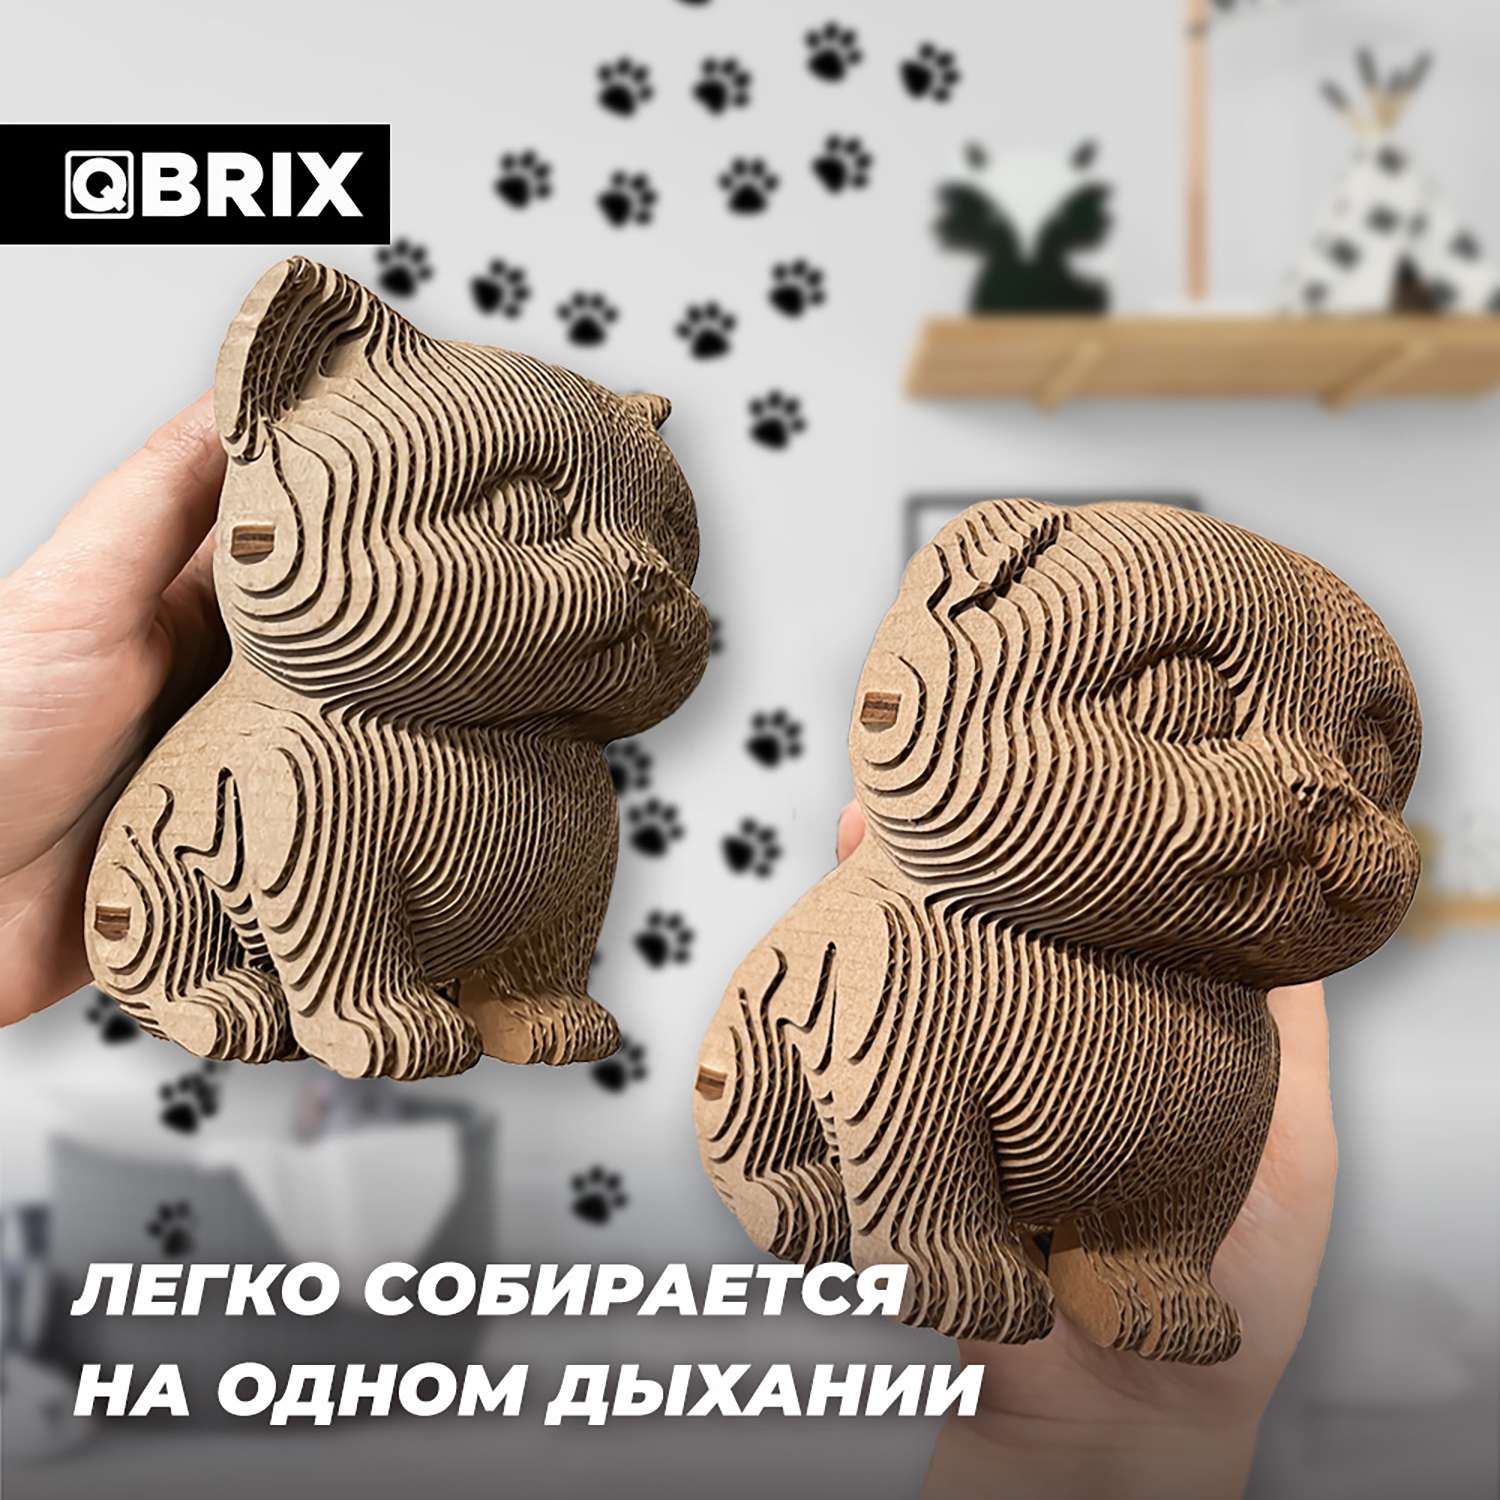 Конструктор QBRIX 3D картонный Три котика 20021 20021 - фото 7